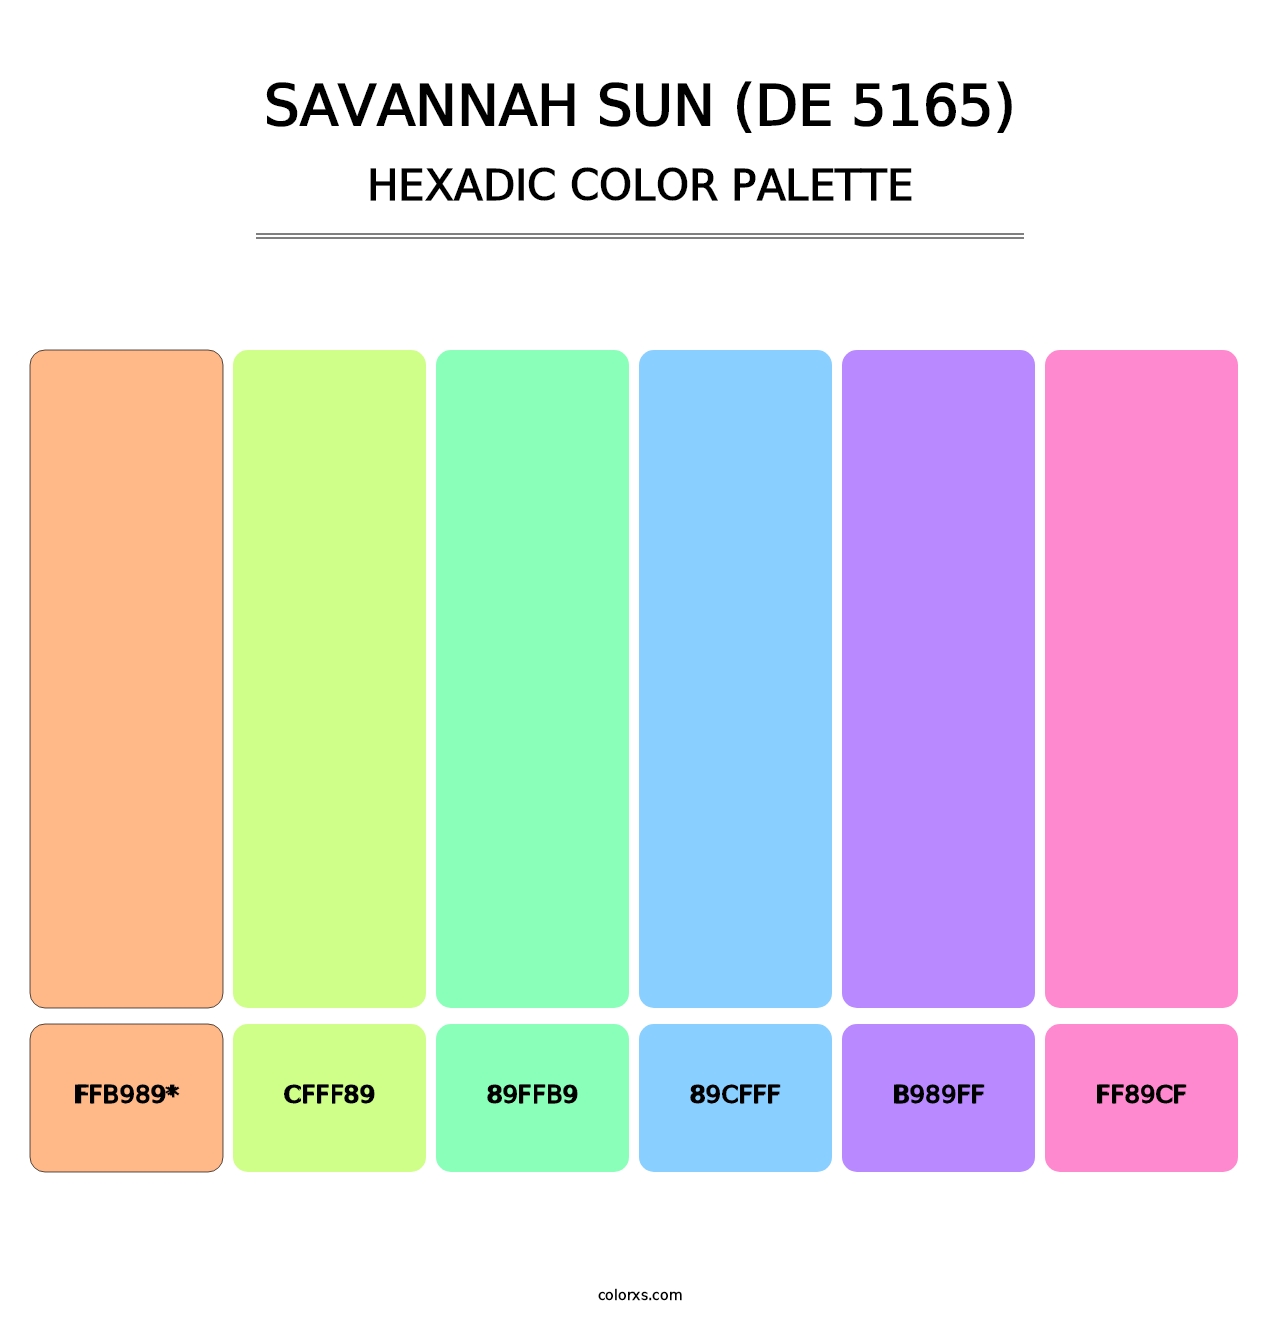 Savannah Sun (DE 5165) - Hexadic Color Palette